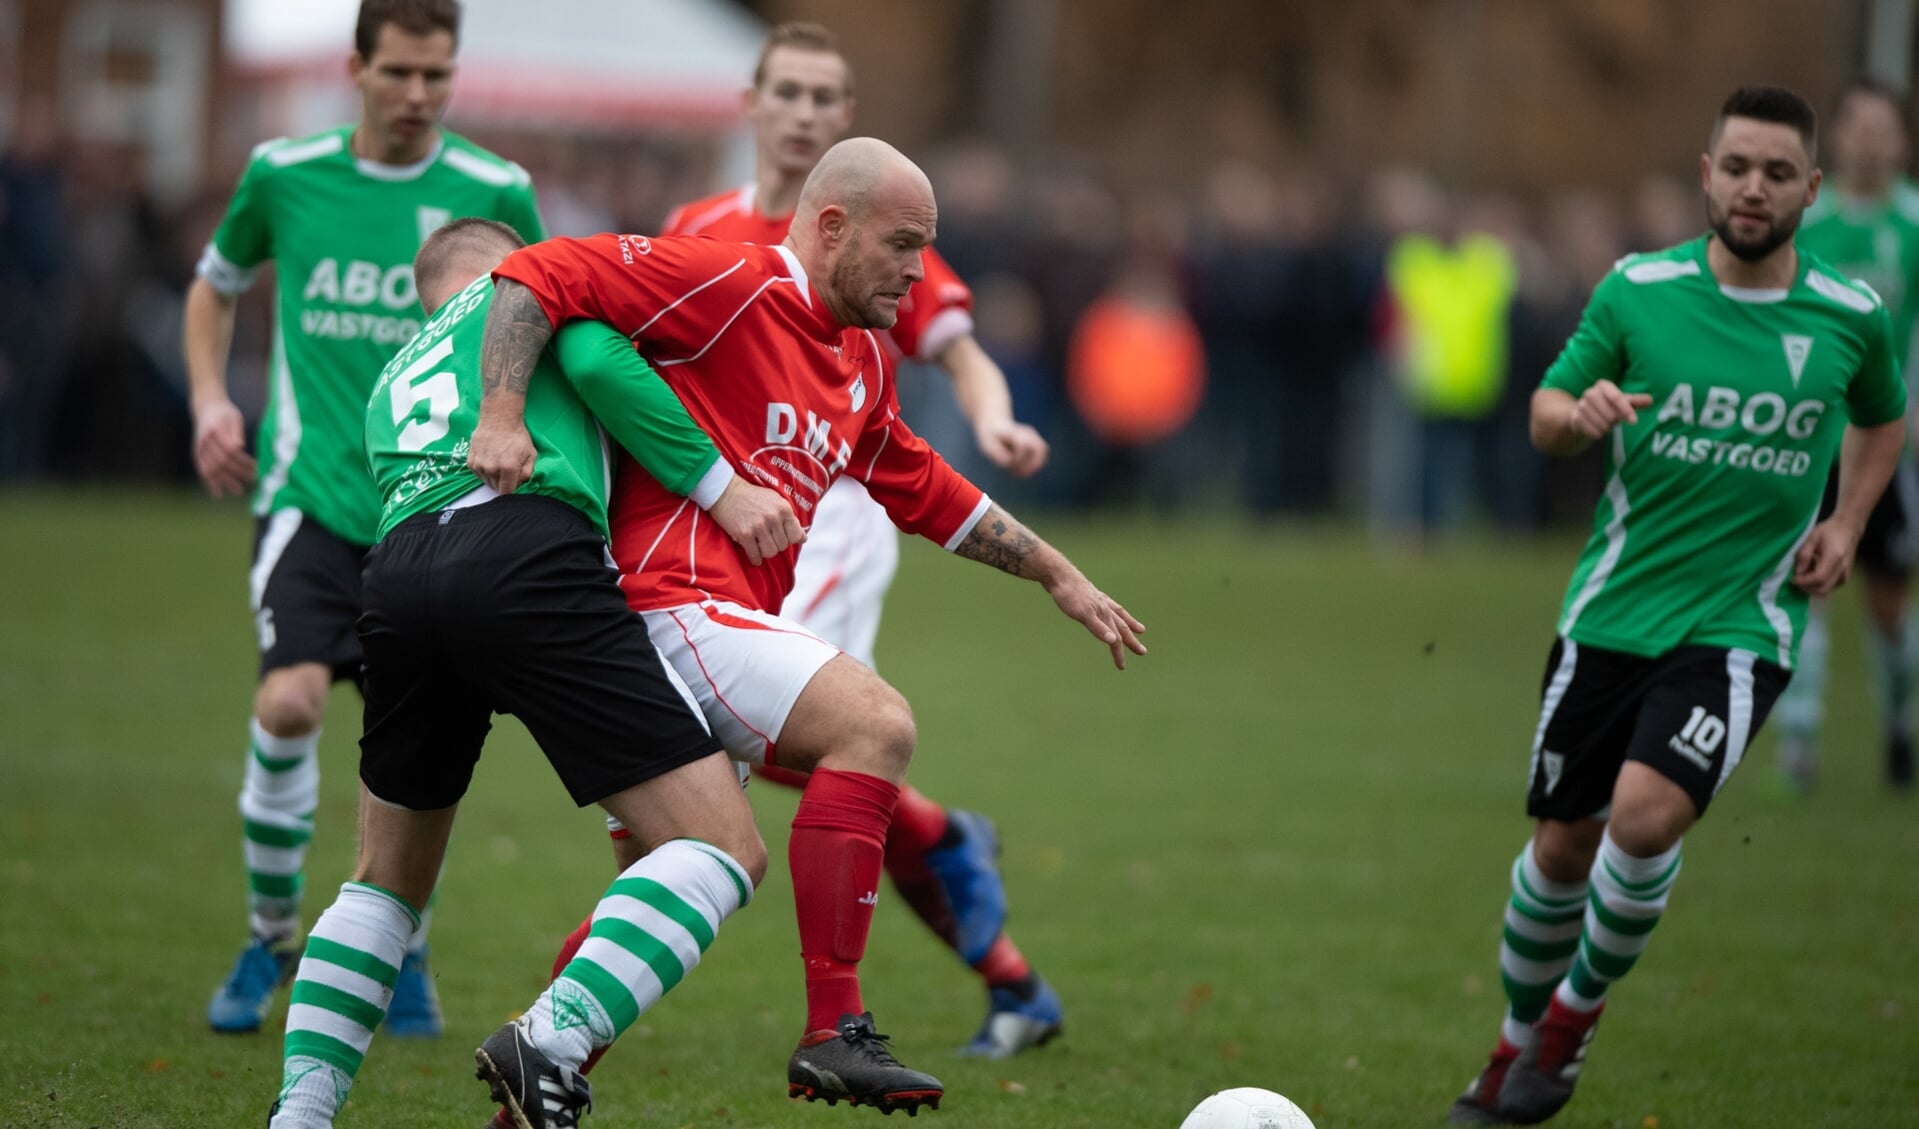 De vorige derby Hees-VVZ'49 vond plaats in december 2018. Die eindigde onbeslist: 1-1.